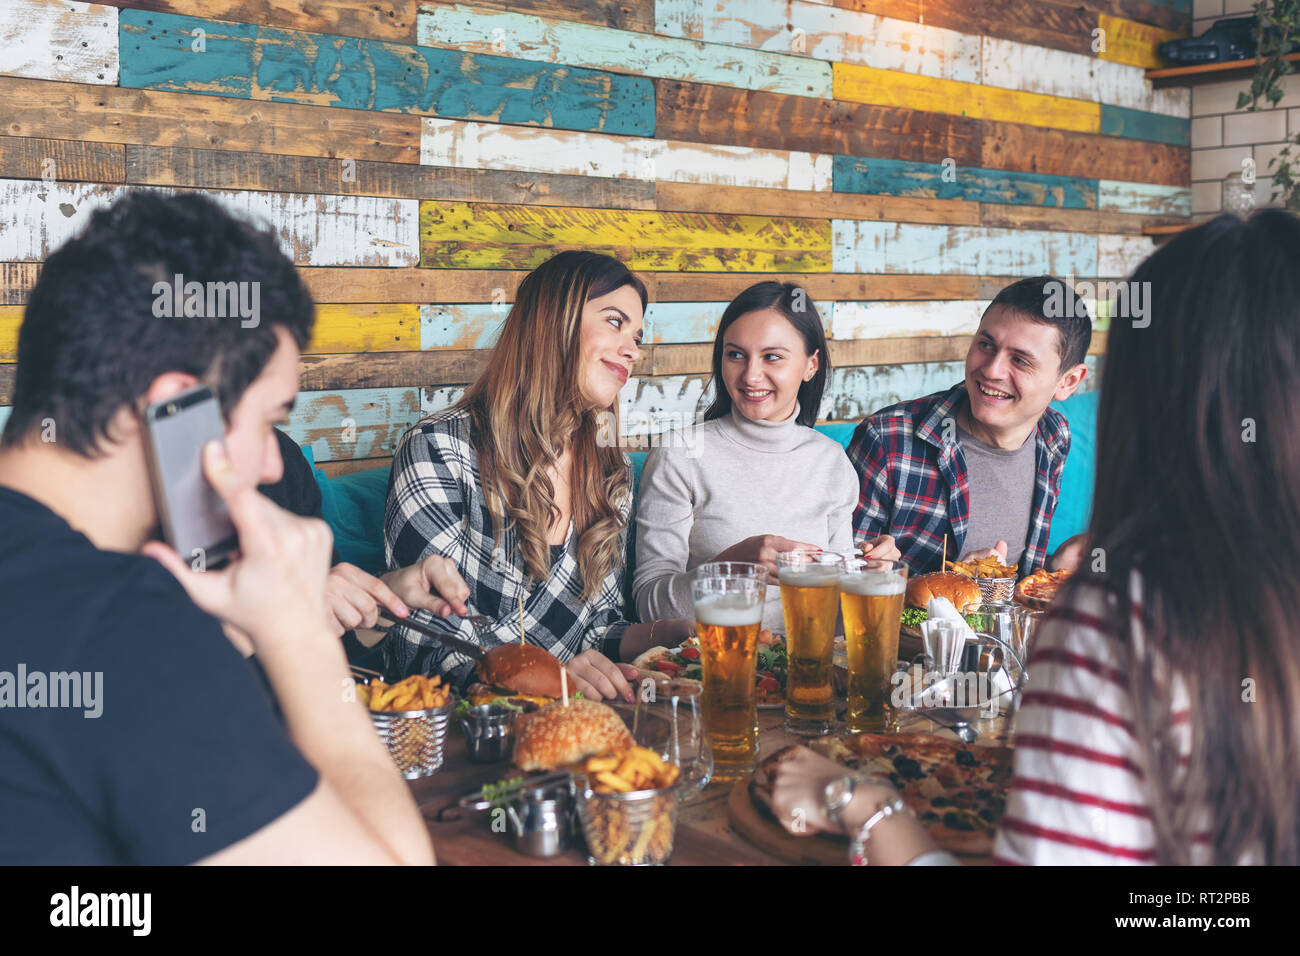 Felice giovani amici celebrando con pizza hamburger e bere birra al pub alla moda Foto Stock